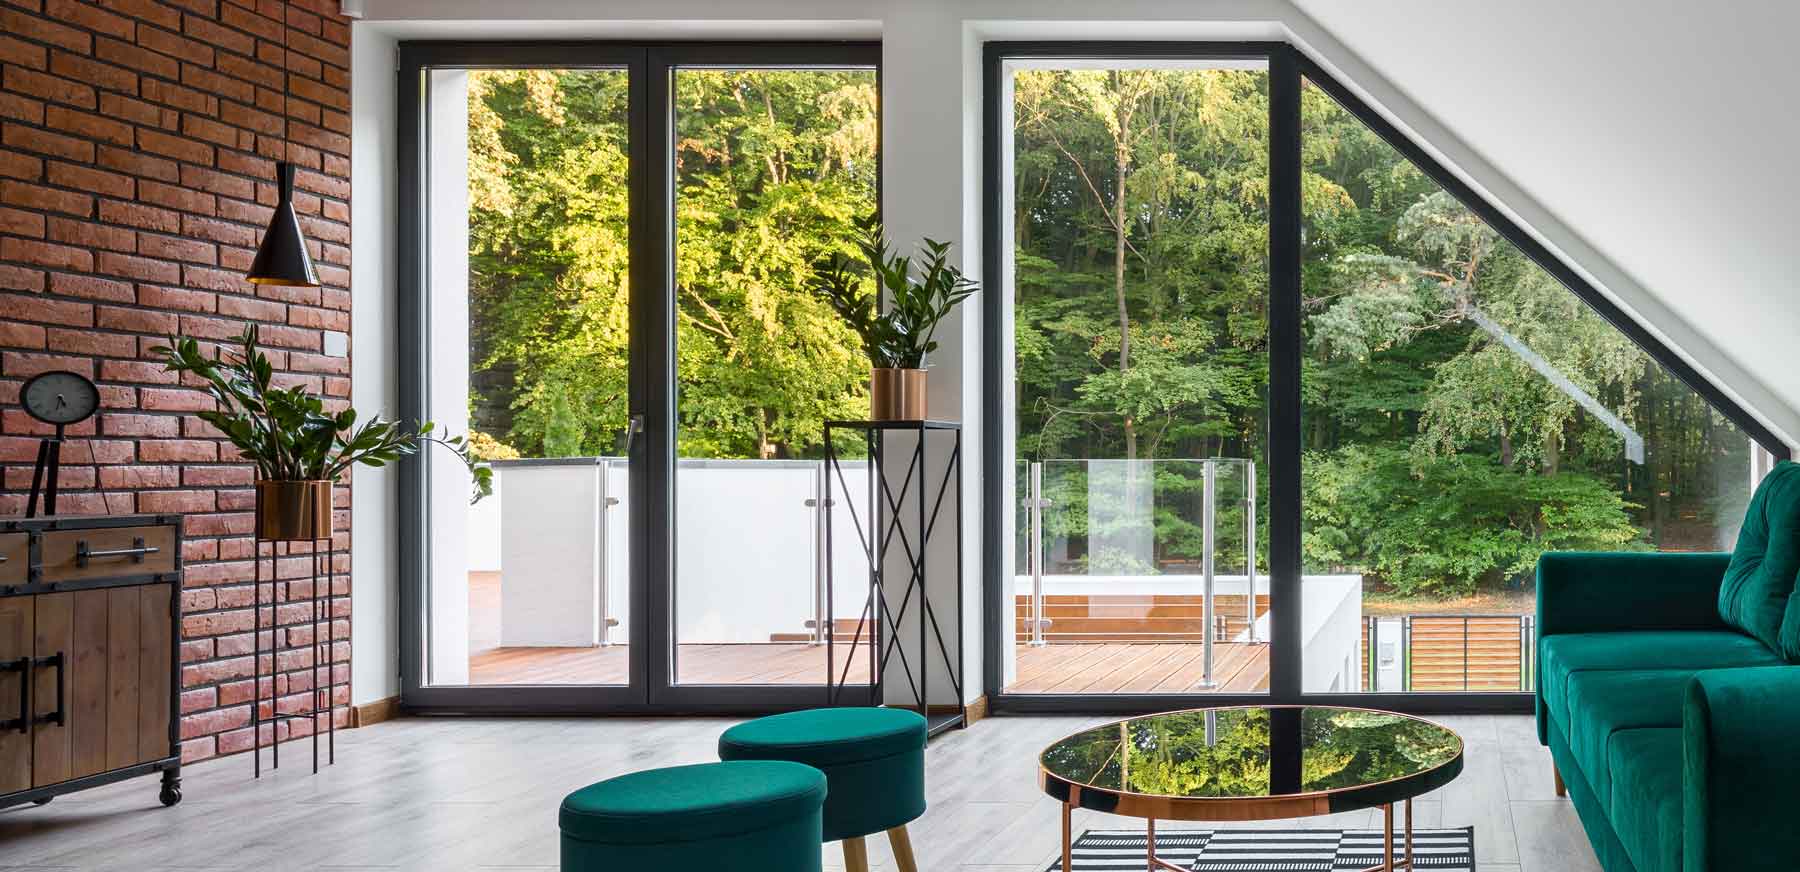 Salon d'une maison avec fenêtre en aluminium